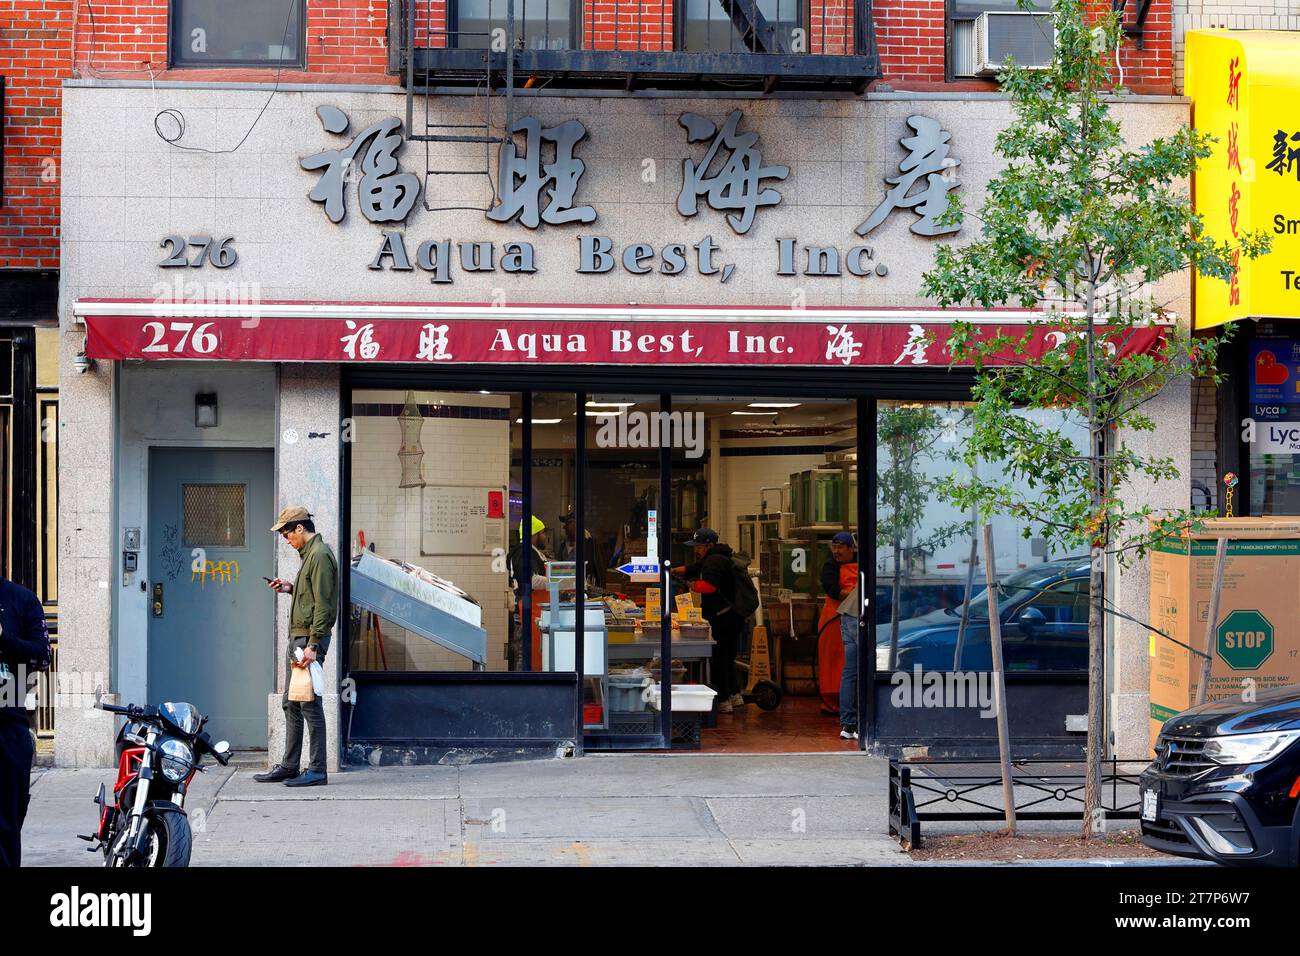 Aqua Best 福旺海產, 276 Grand St, New York, NYC Foto von einem Fischhändler und Fischmarkt in Manhattan, Chinatown. Stockfoto